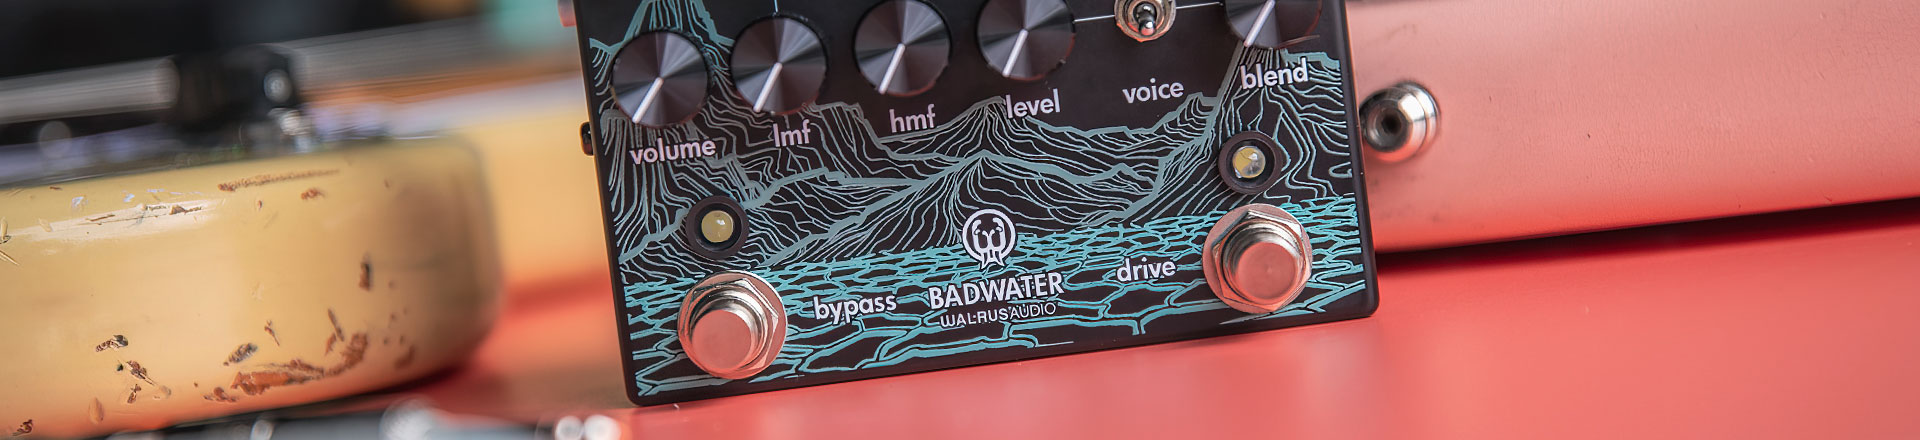 Walrus Audio dla basistów - Oto preamp Badwater